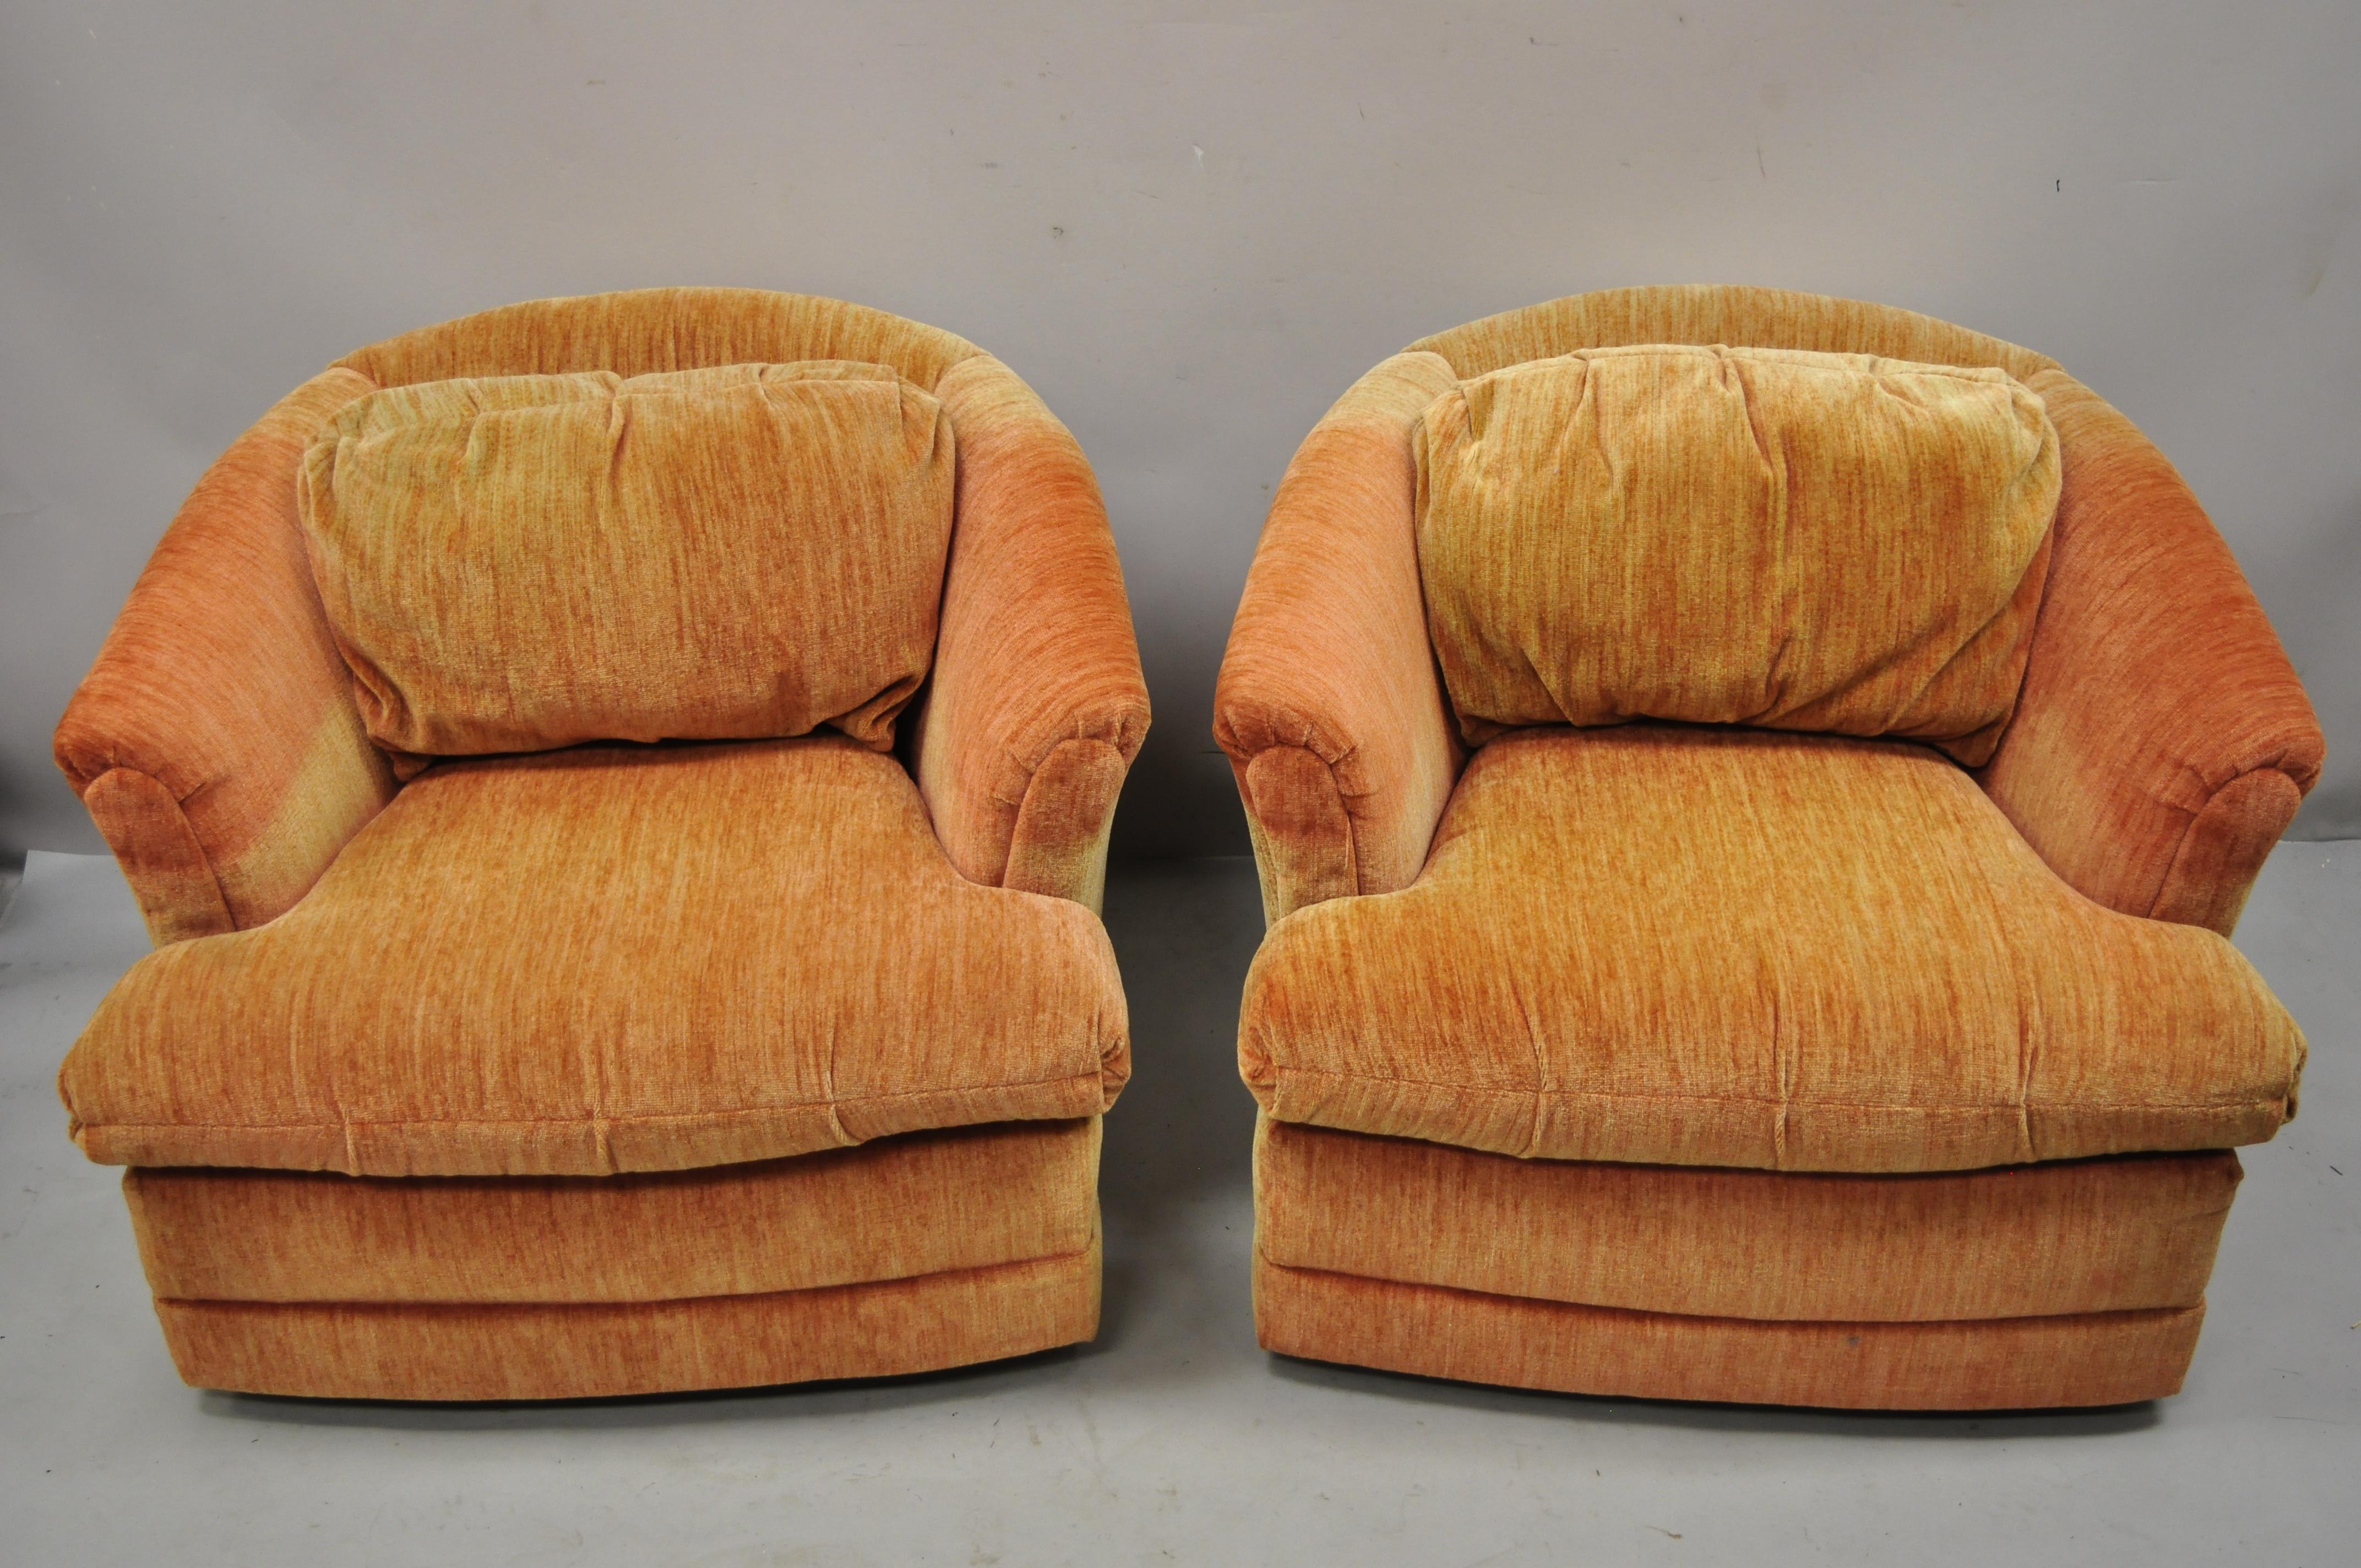 Vintage Flexsteel Mid-Century Modern orange upholstered swivel lounge club chairs - une paire. L'article est doté d'une base pivotante, d'un cadre entièrement rembourré, d'un Label d'origine, d'une très belle paire vintage, de lignes modernistes